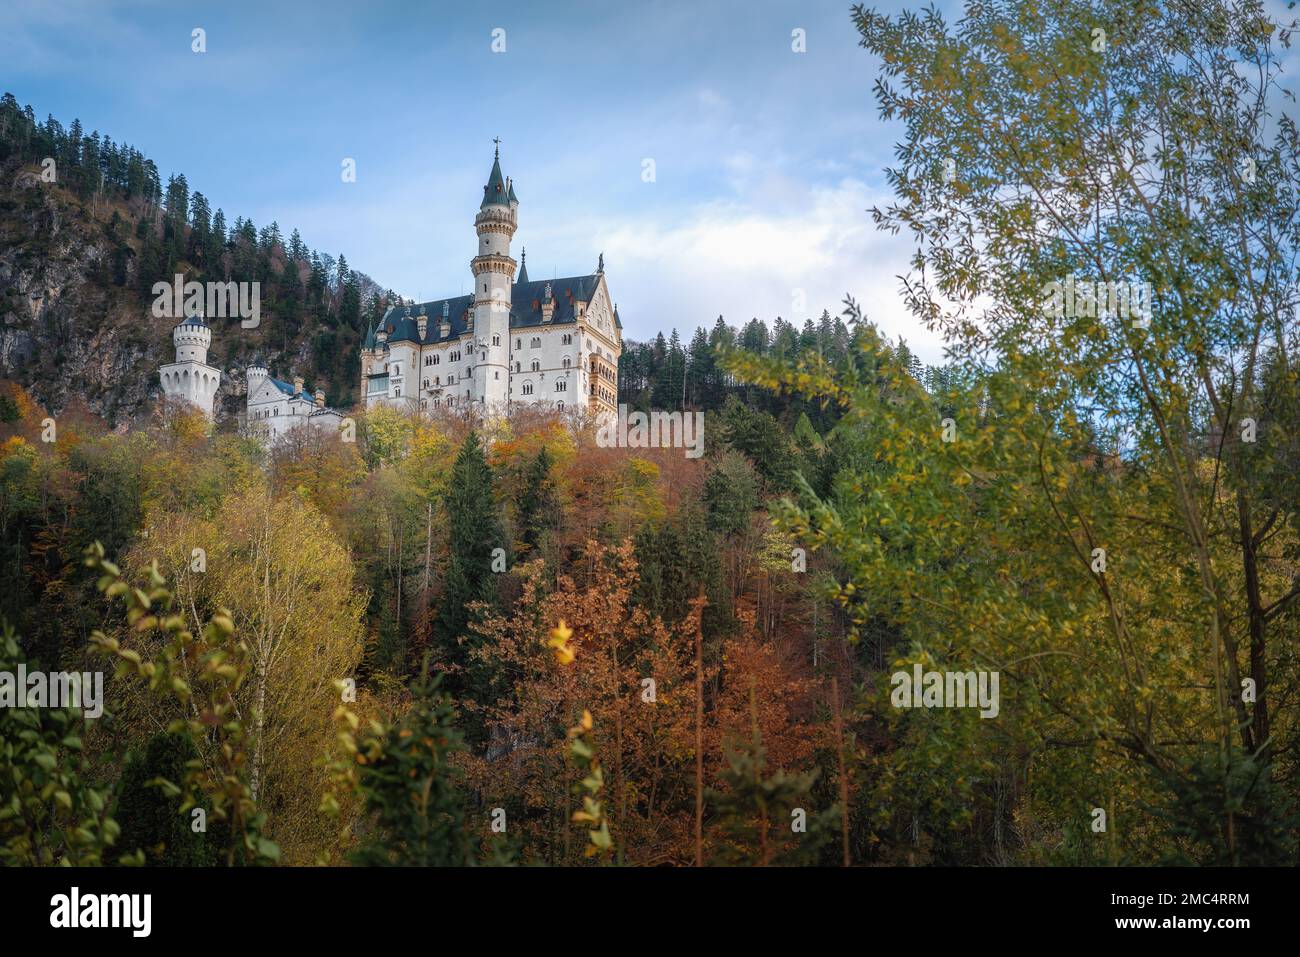 Schloss Neuschwanstein bei Füssen - Schwangau, Bayern, Deutschland Stockfoto